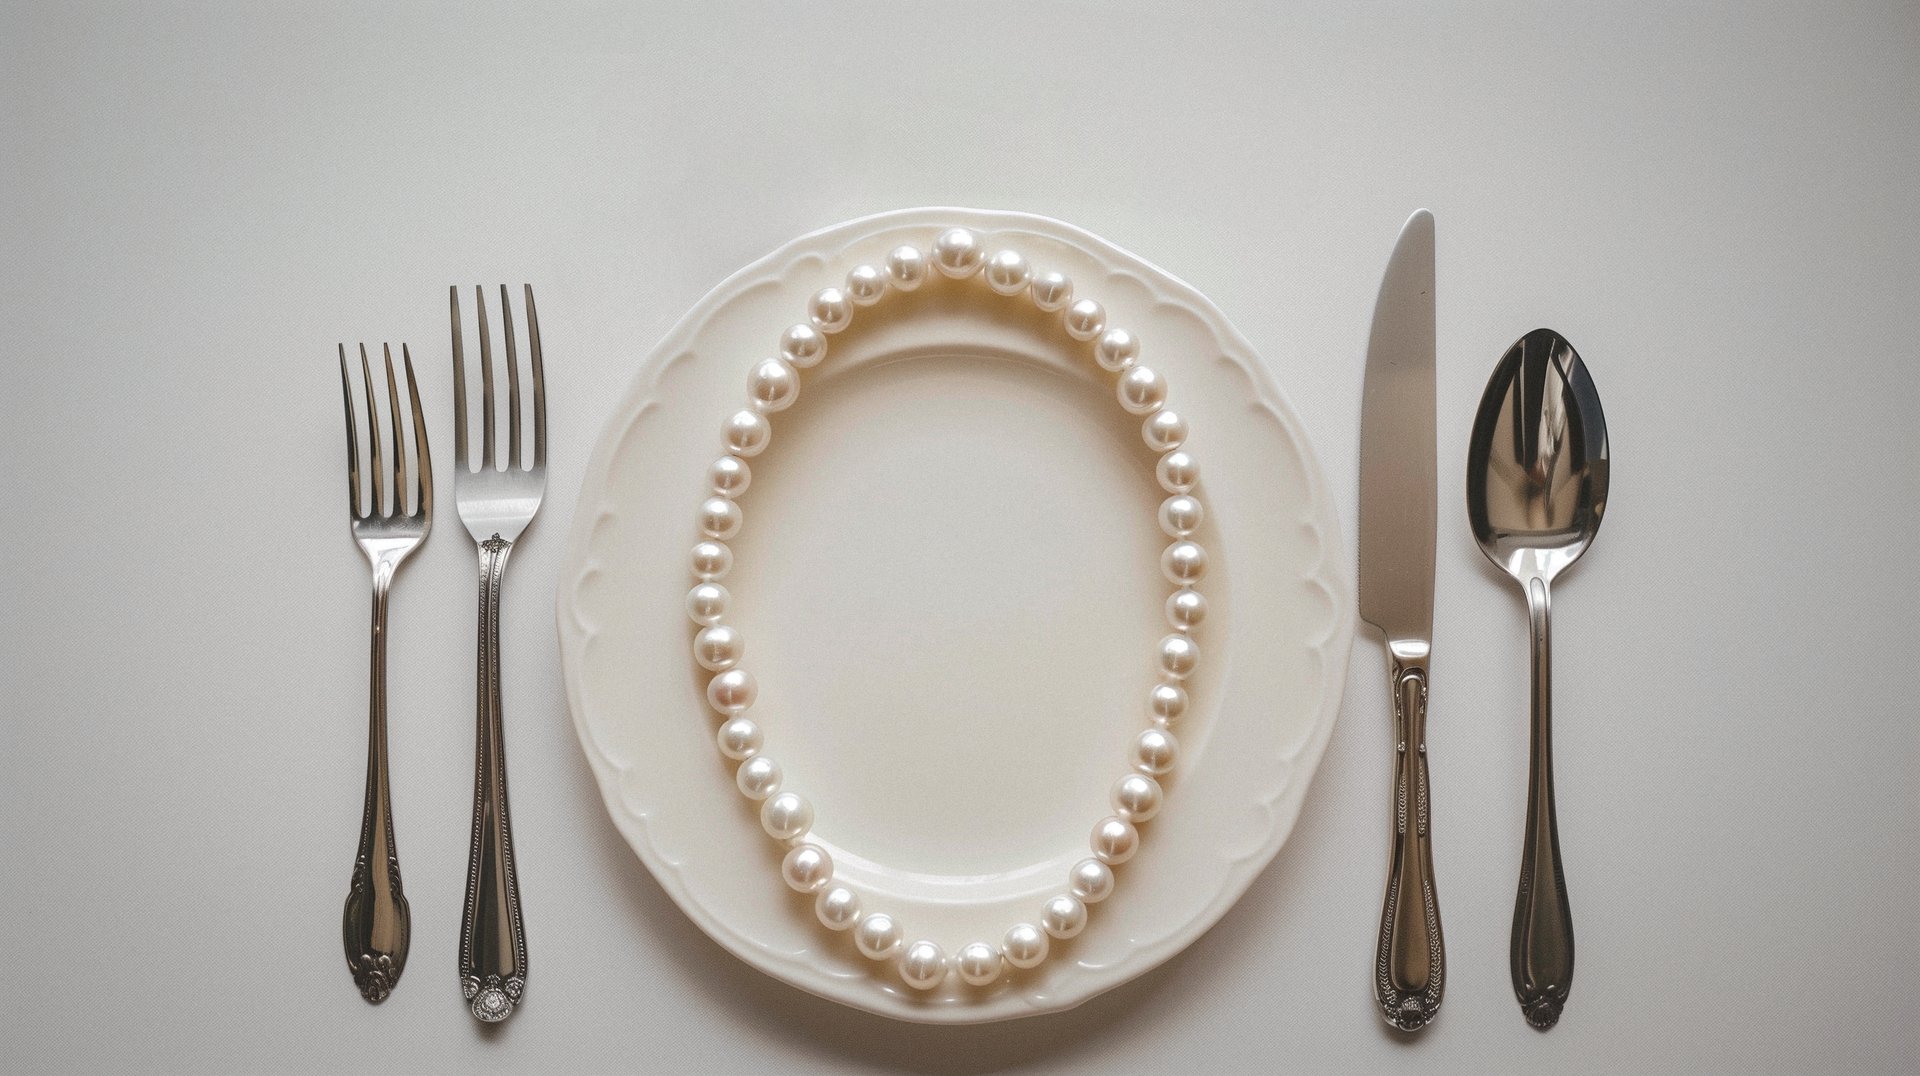 pearl necklace between flatware set